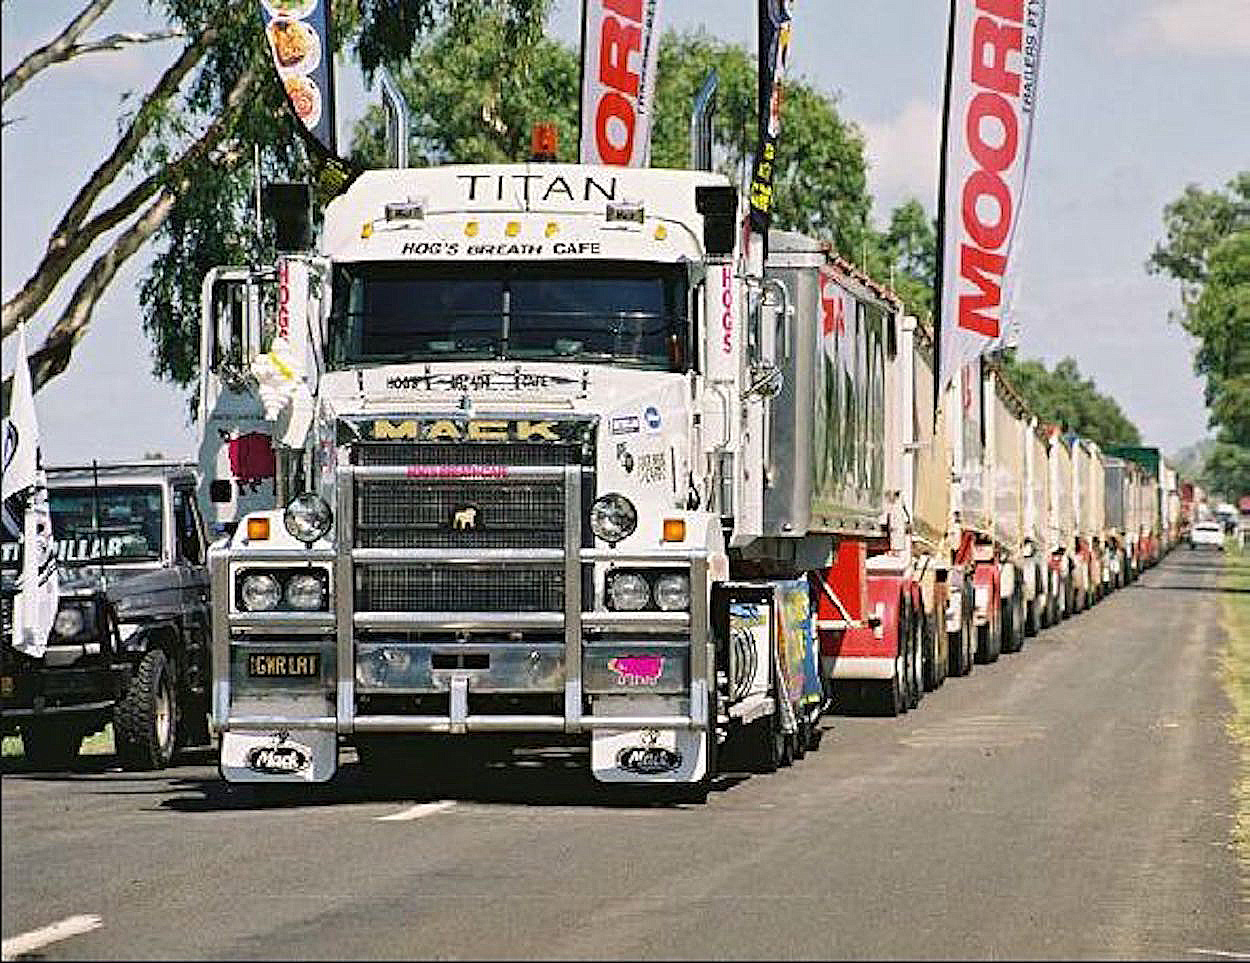 O recorde mundial do caminhão mais longo do mundo que foi feito na Austrália